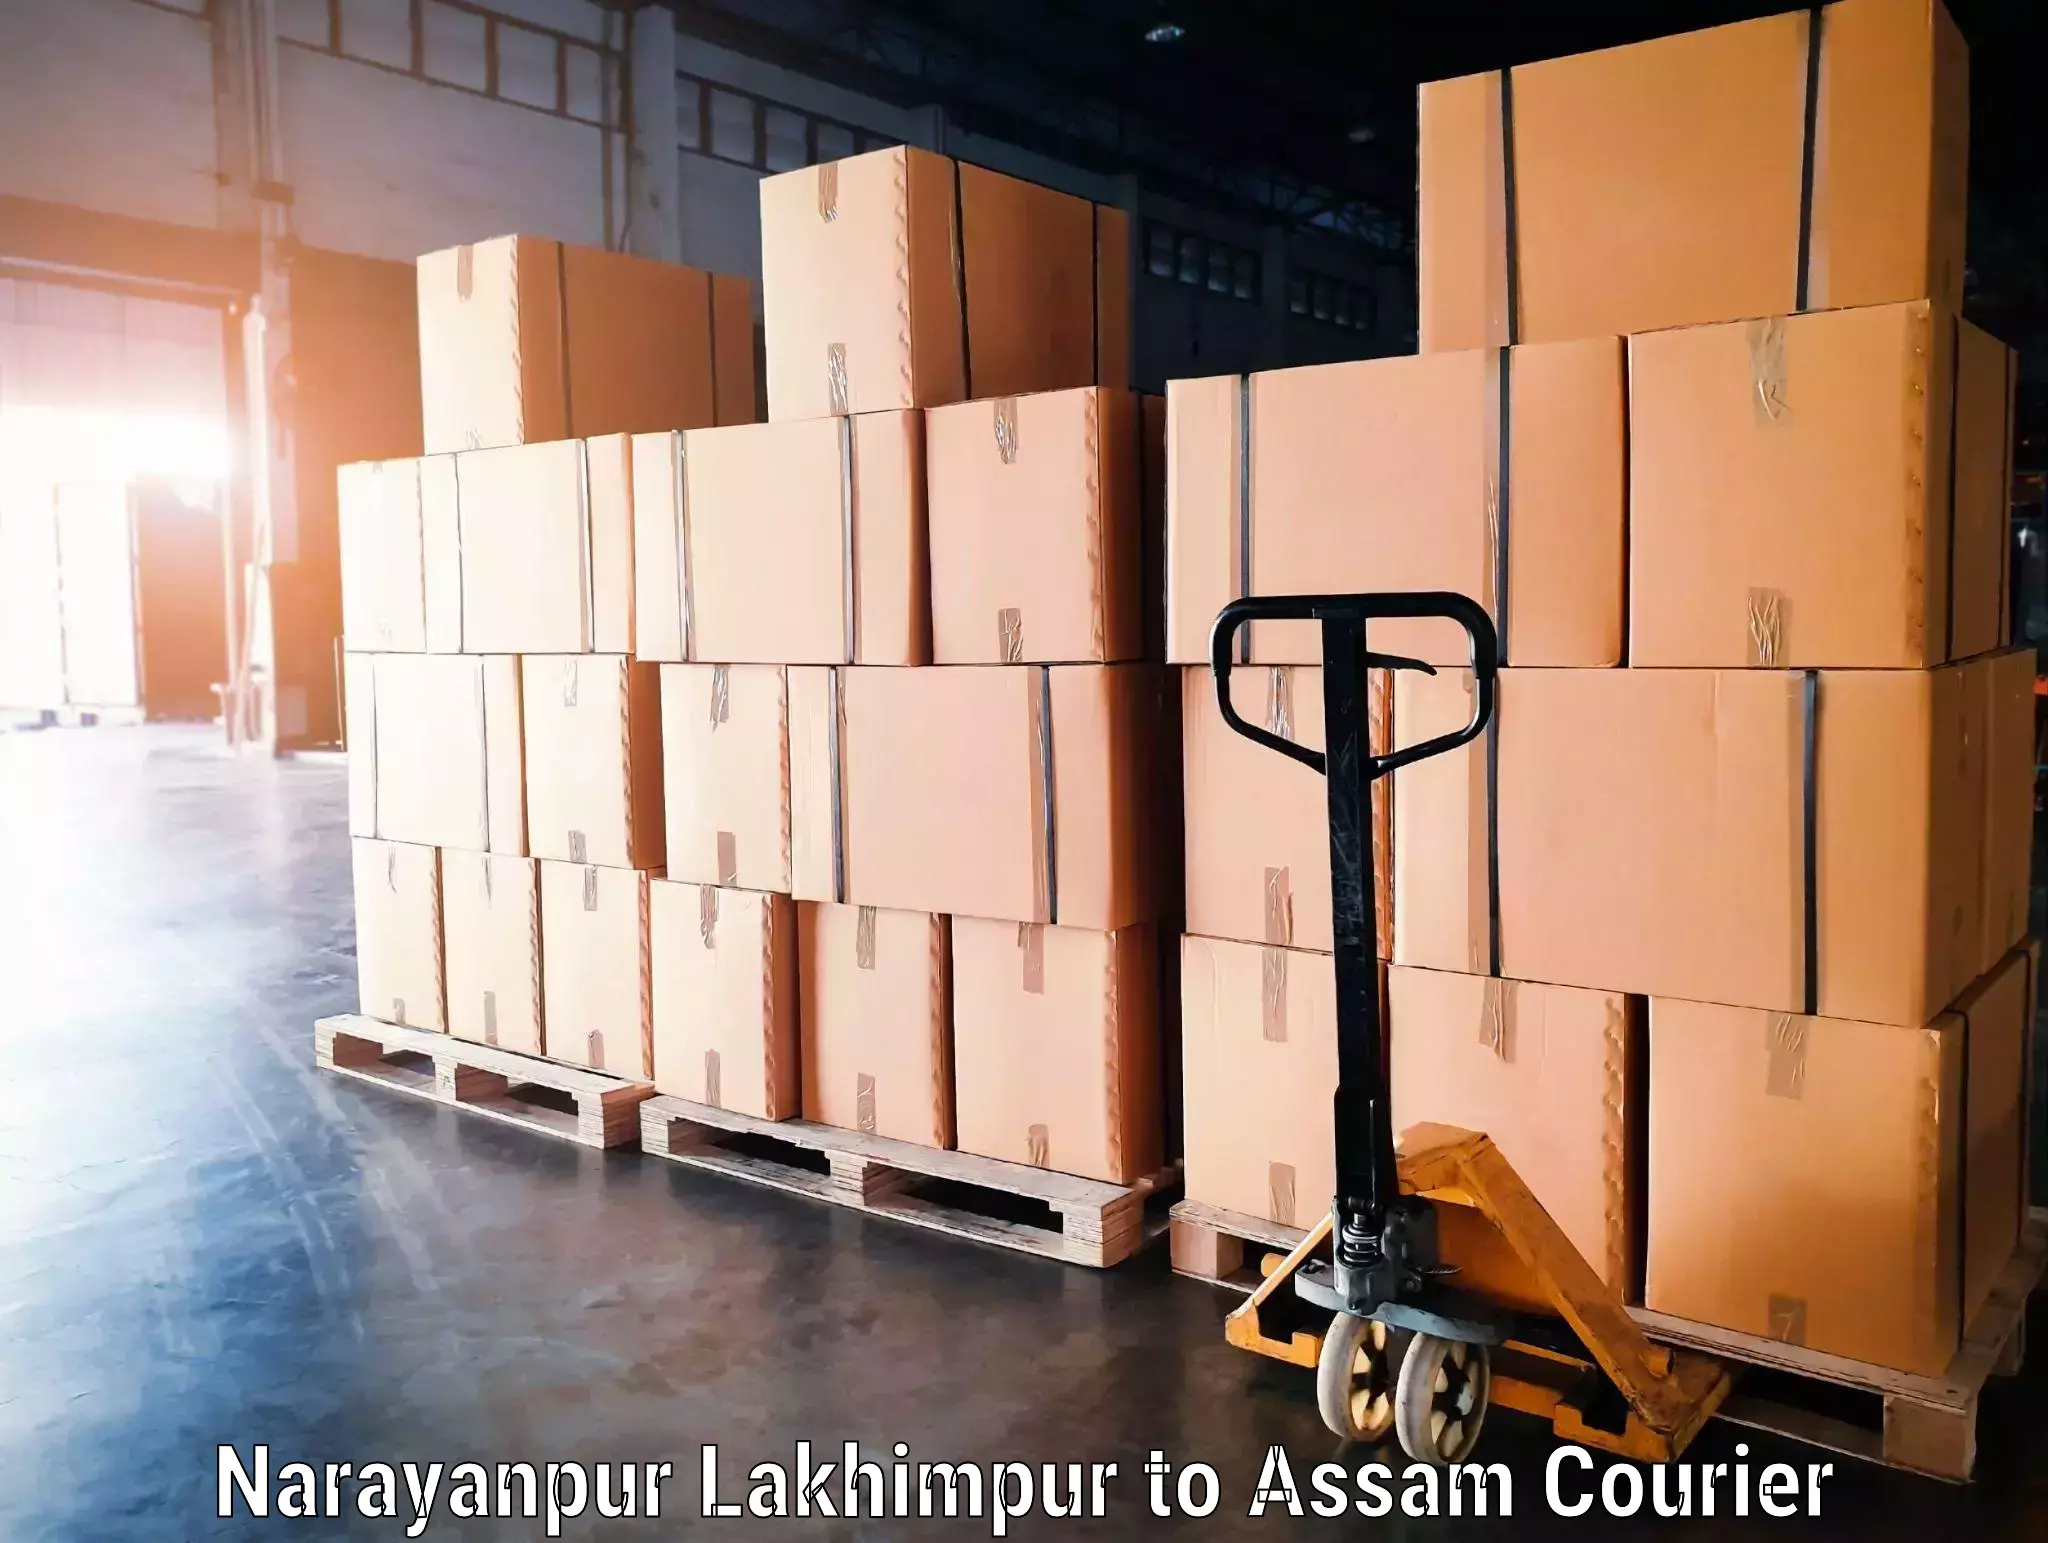 Artwork baggage courier Narayanpur Lakhimpur to Guwahati University